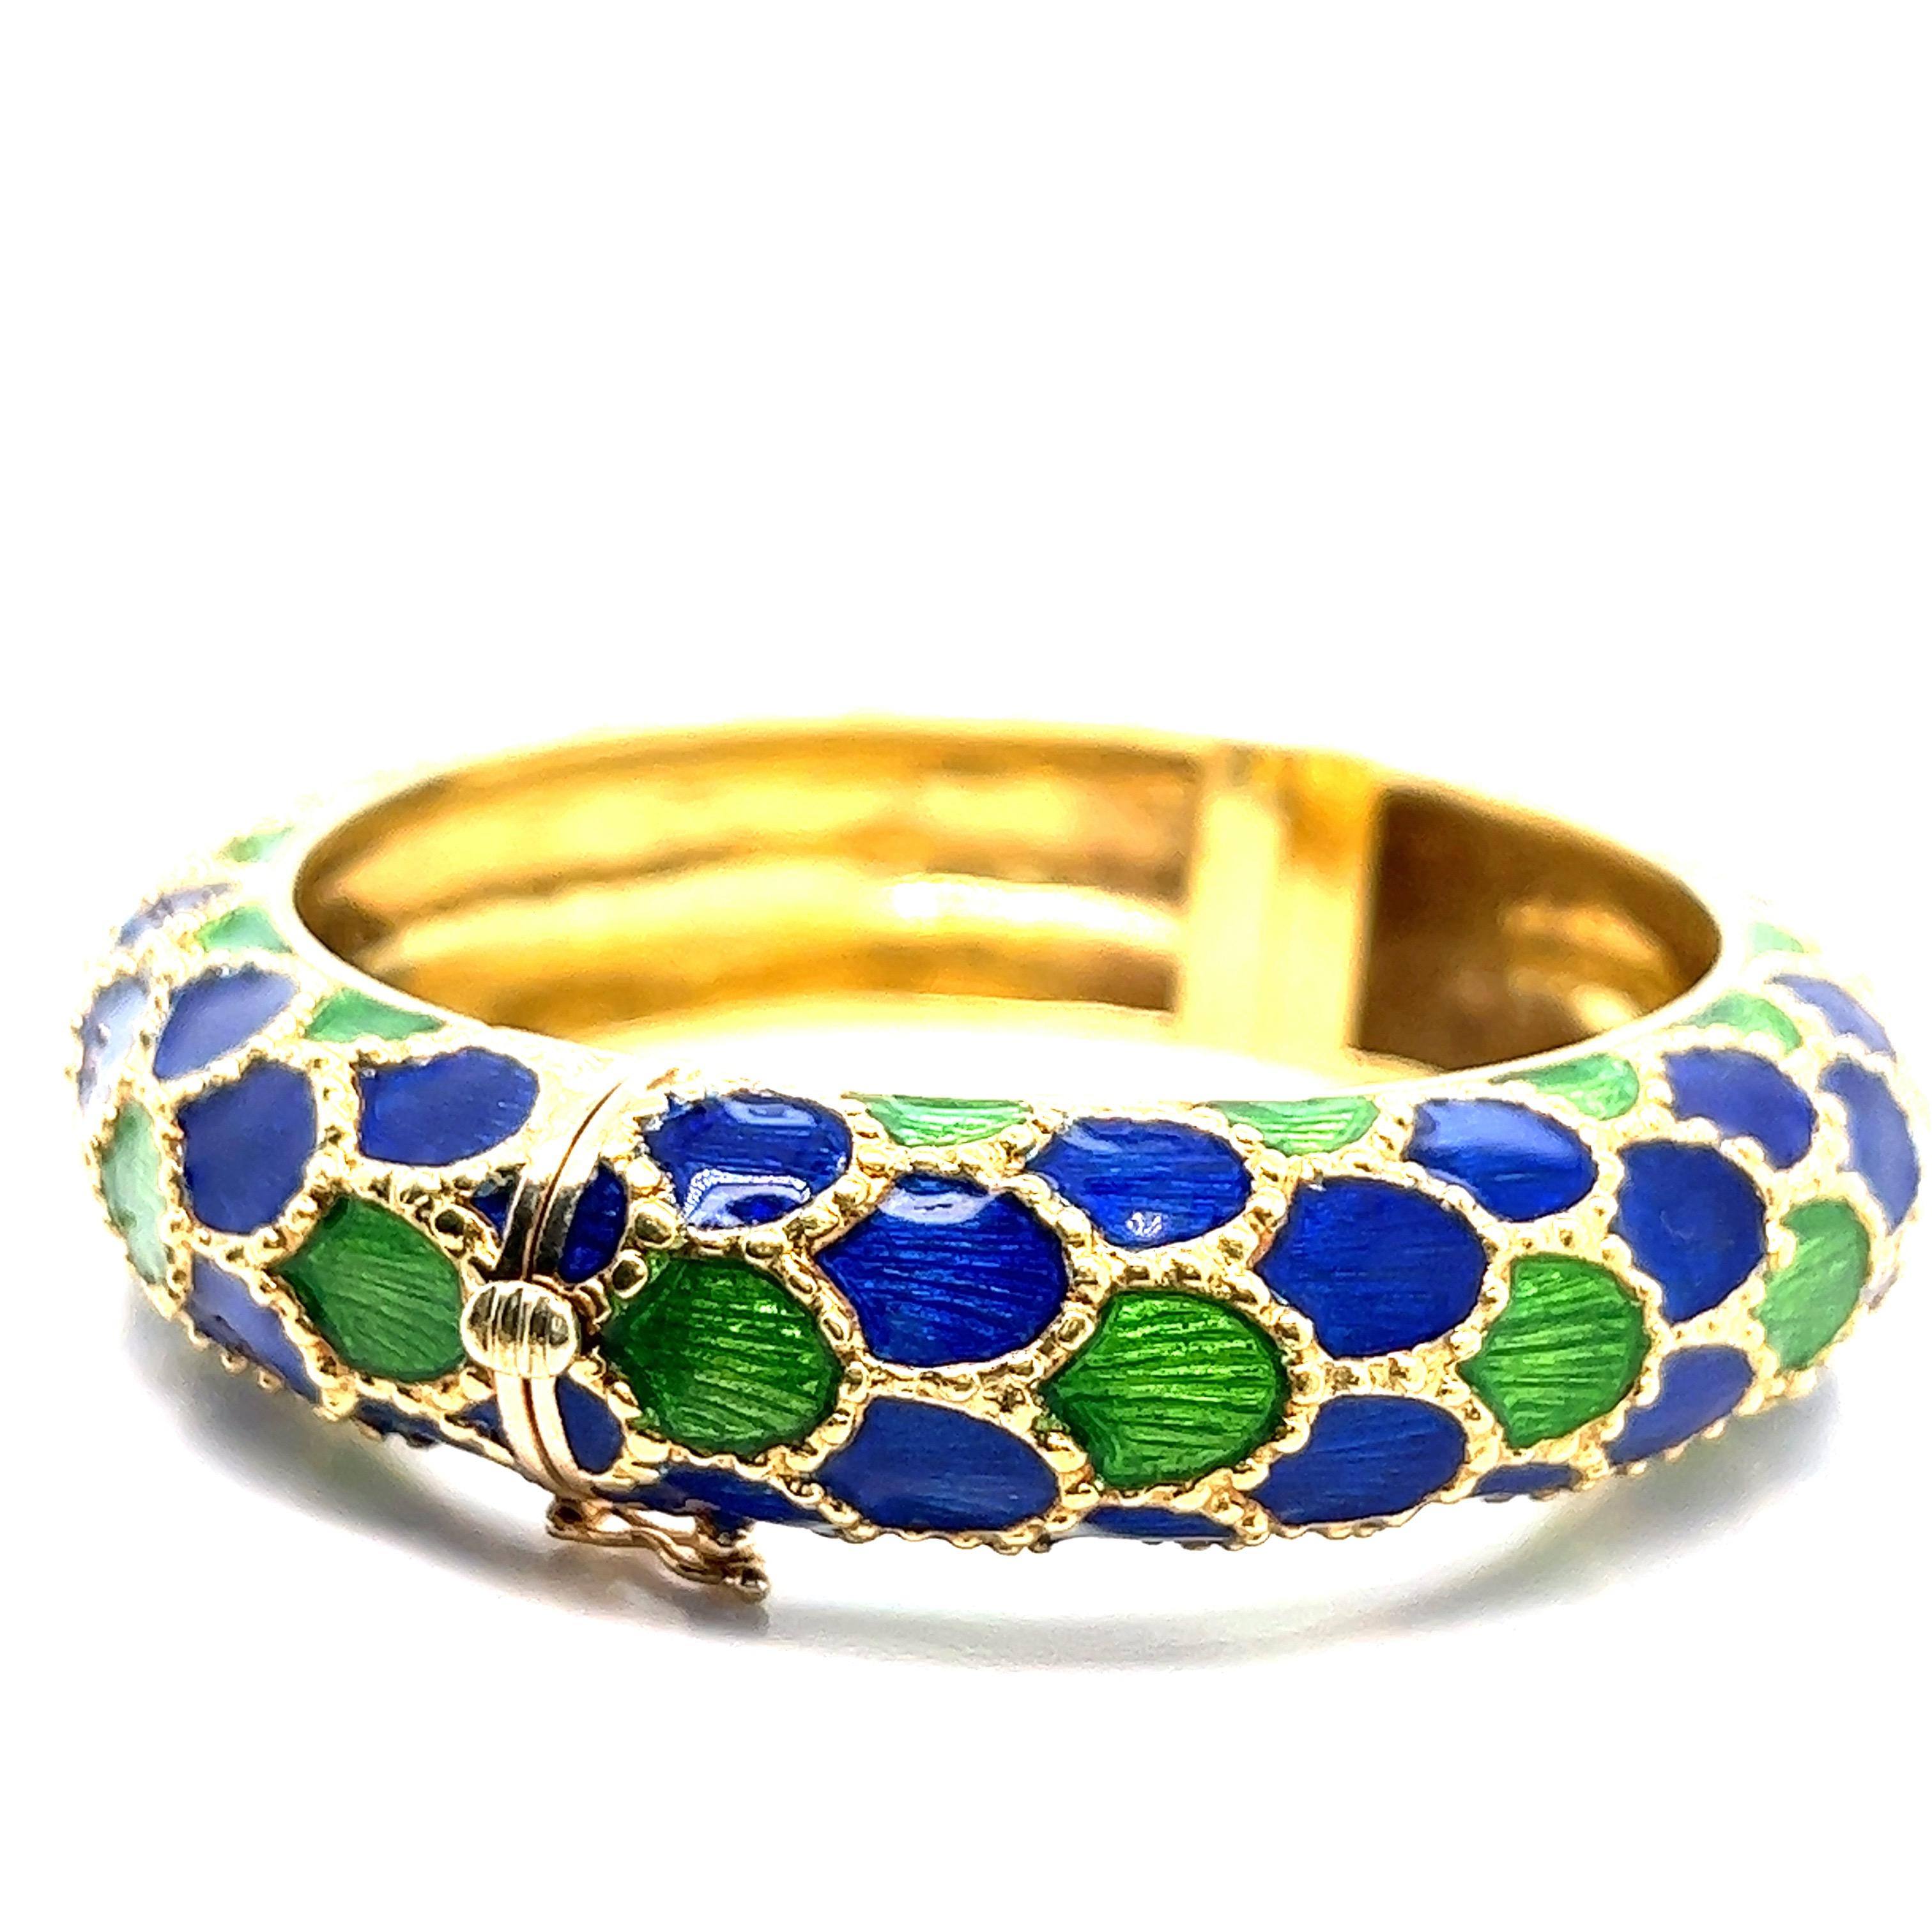 Bracelet Tiffany & Co. en or jaune 18 carats avec émail bleu royal et vert. Il est orné d'un motif en écailles de poisson sur toute sa surface. Marqué : Tiffany / 18k. Poids total : 82,9 grammes. Largeur : 3 pouces. Longueur : 2.75 pouces.